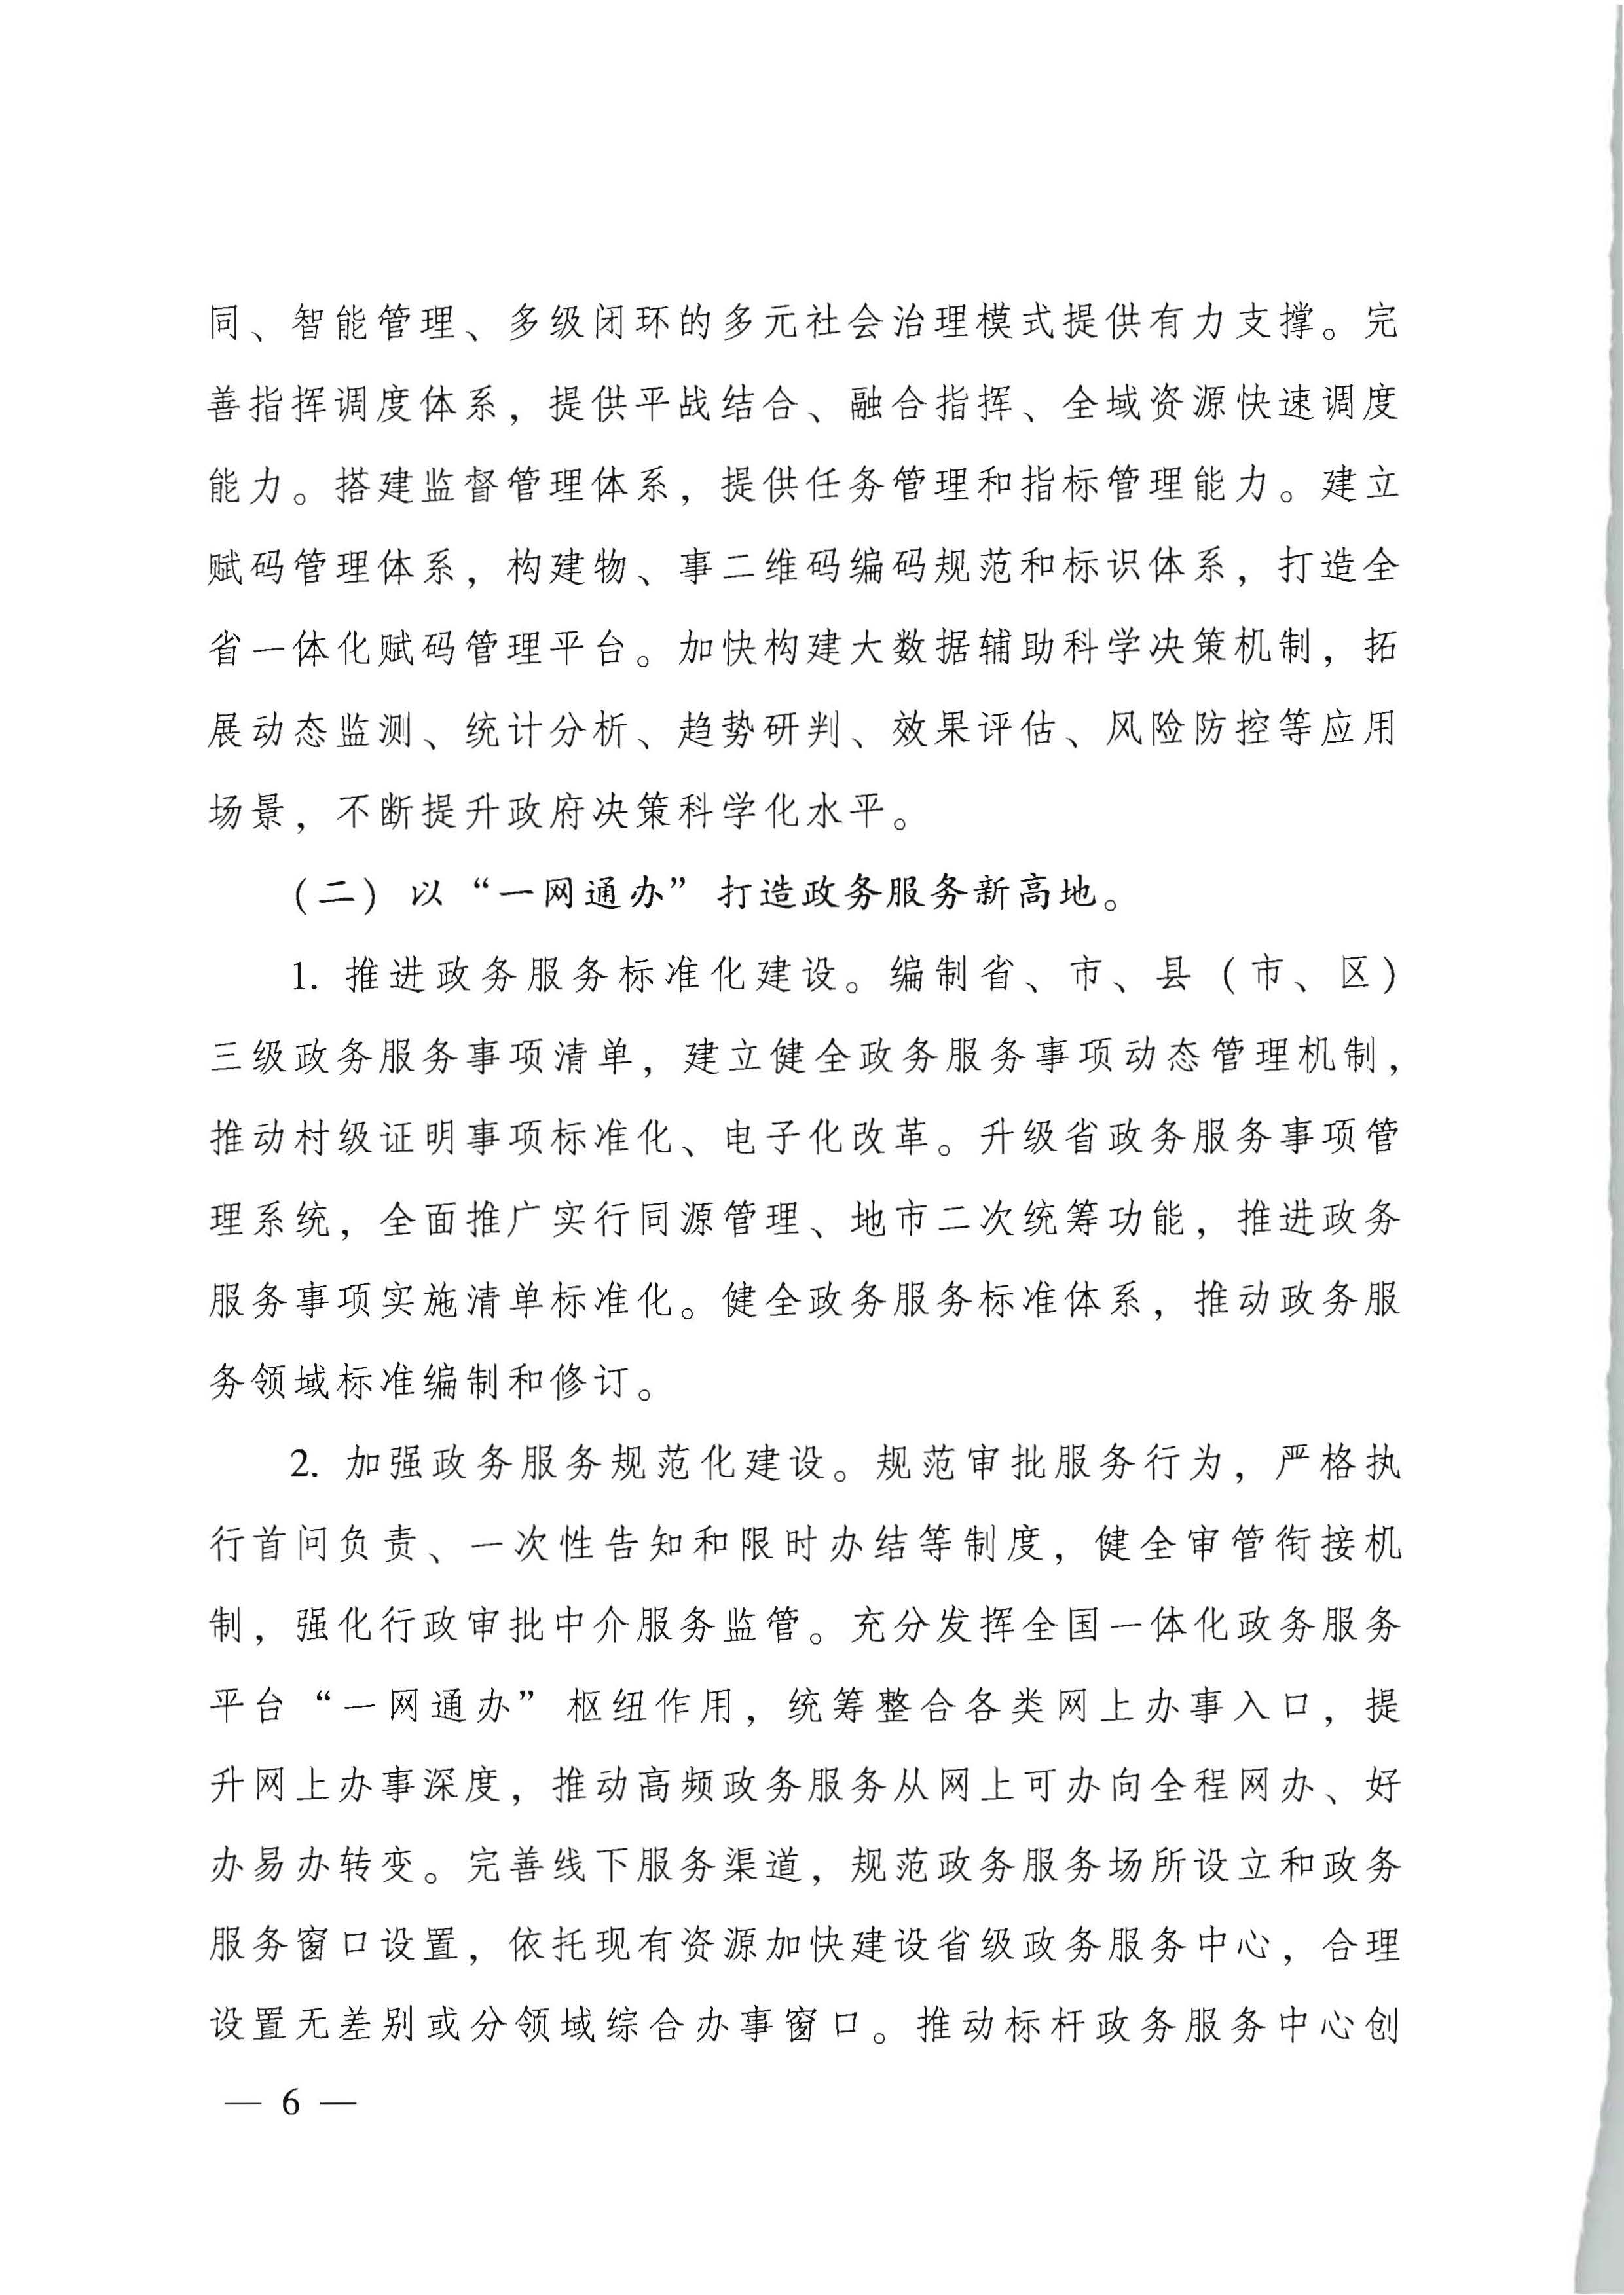 广东省人民政府关于进一步深化数字政府改革建设的实施意见_页面_06.jpg